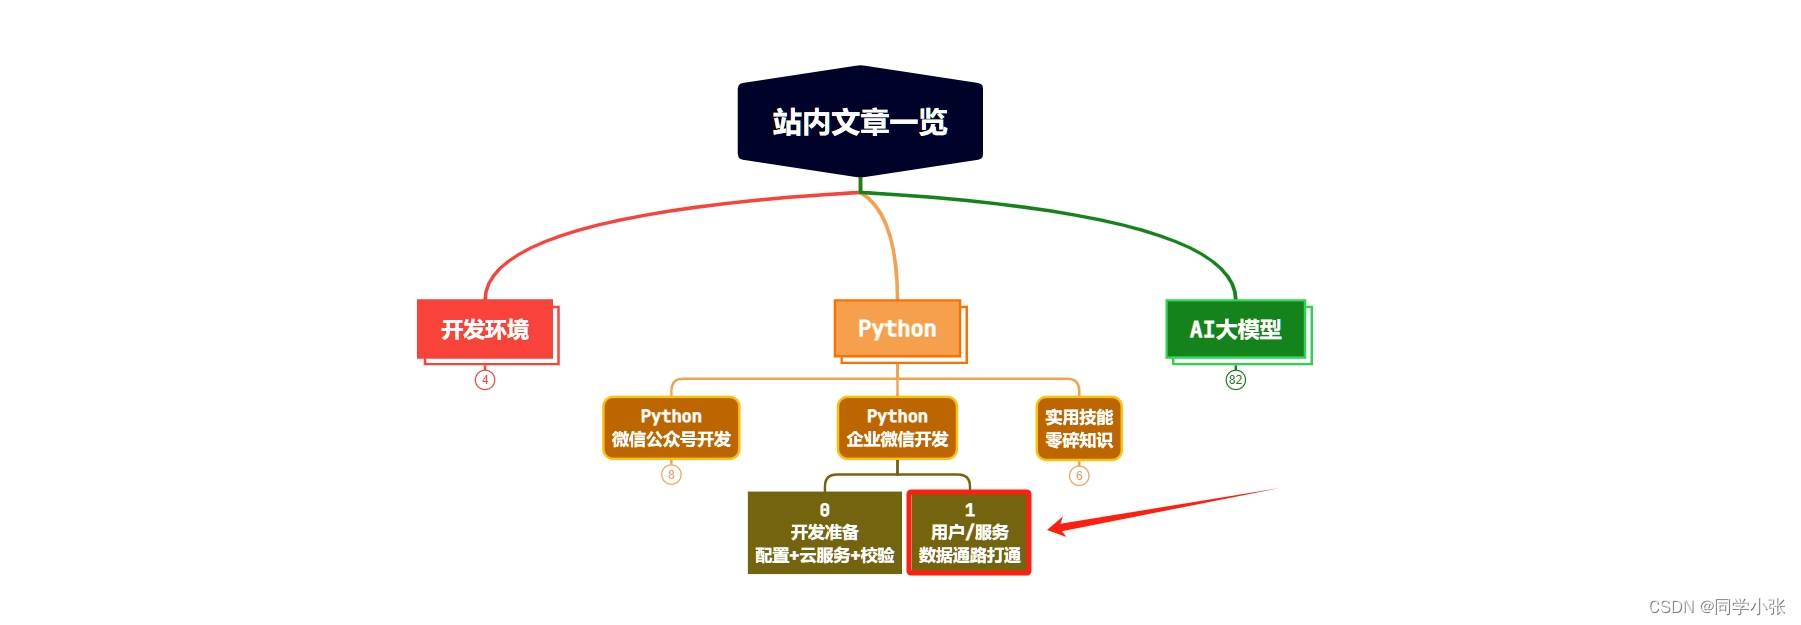 【Python+微信】【企业微信开发入坑指北】1. 数据链路打通：接收用户消息处理并回复